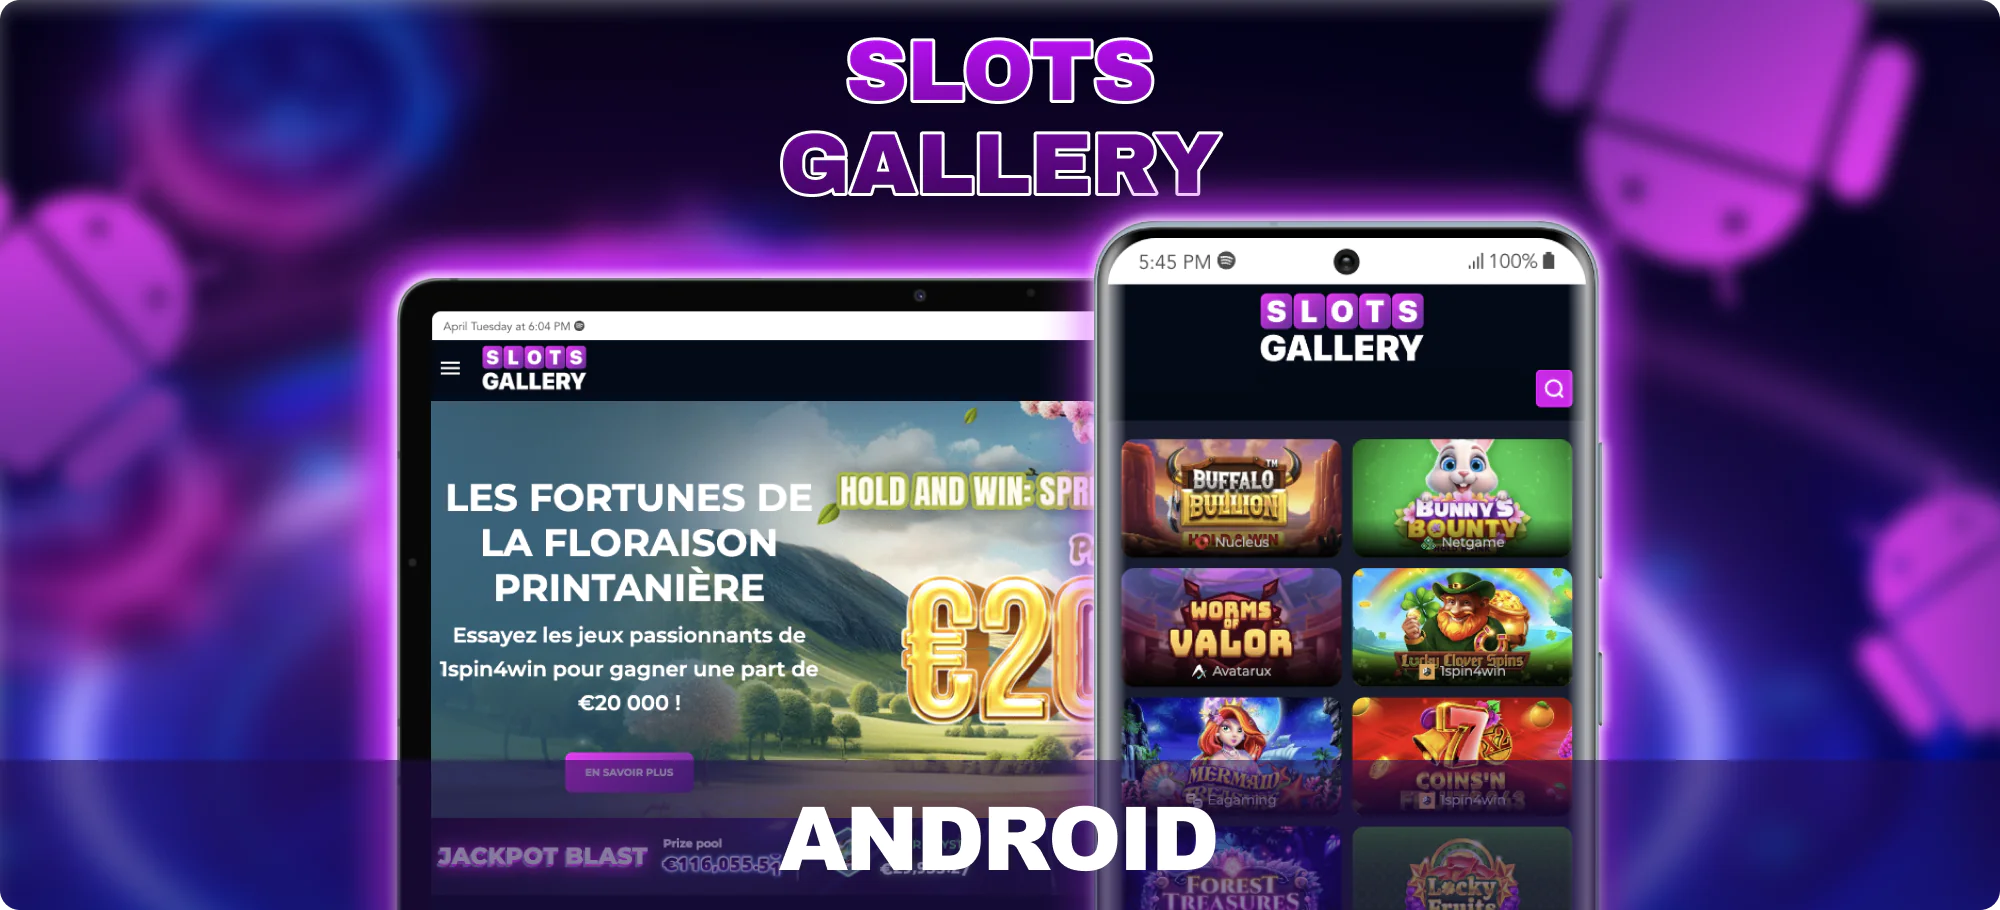 Appareils Android disponibles pour les joueurs canadiens sur Slots Gallery